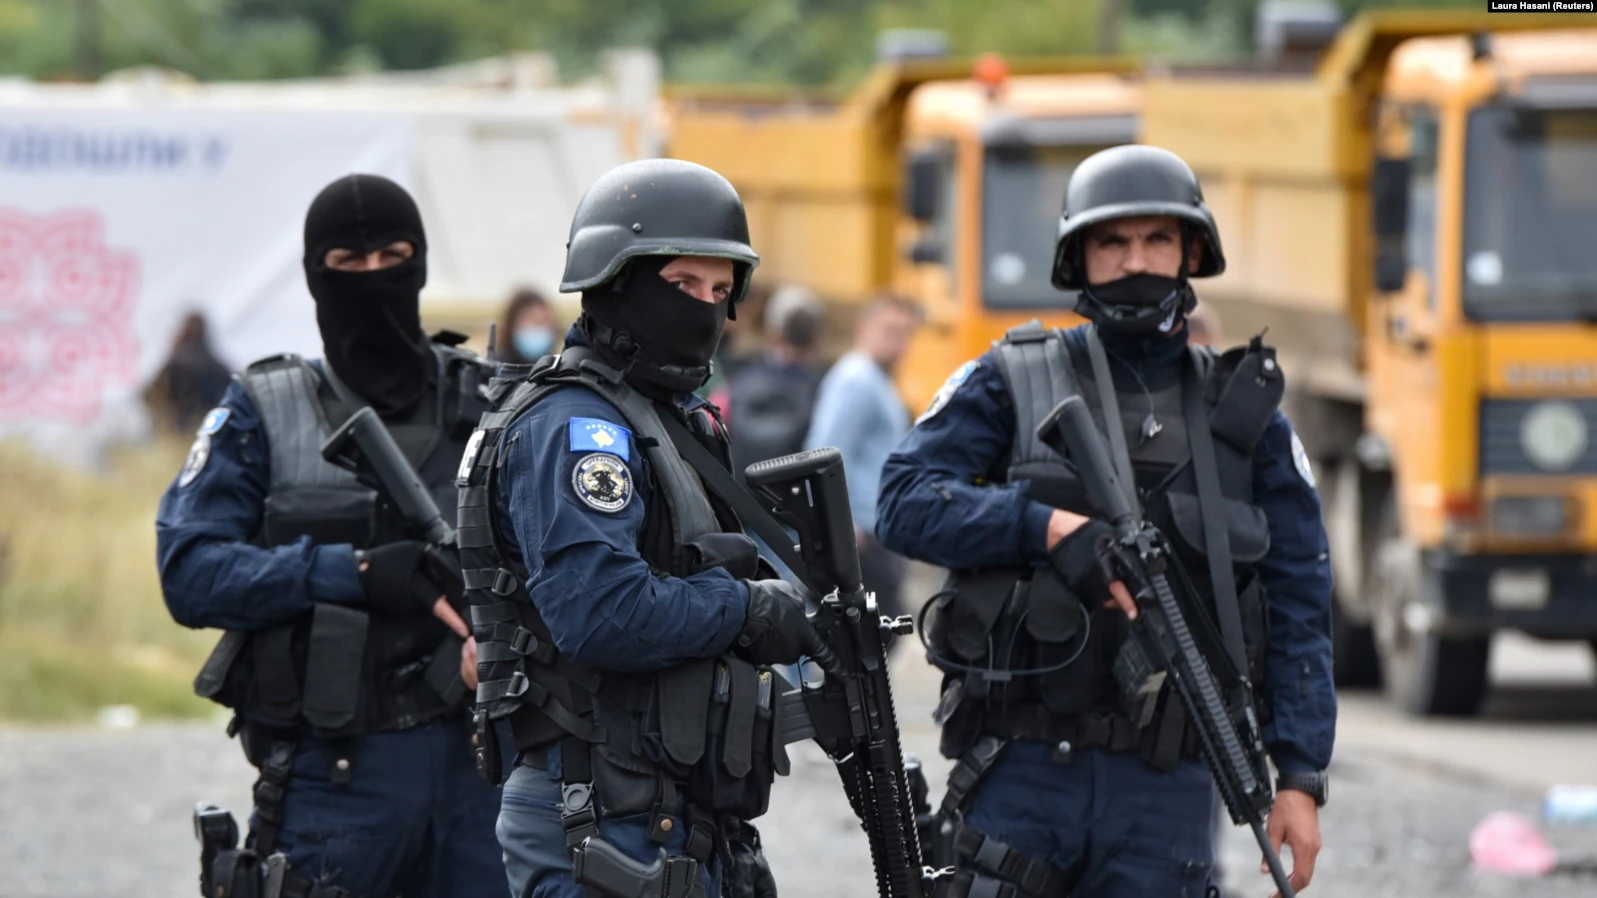  Vazhdon barrikadimi në veri – Vëzhgues edhe KFOR-i, EULEX-i, por edhe Policia serbe